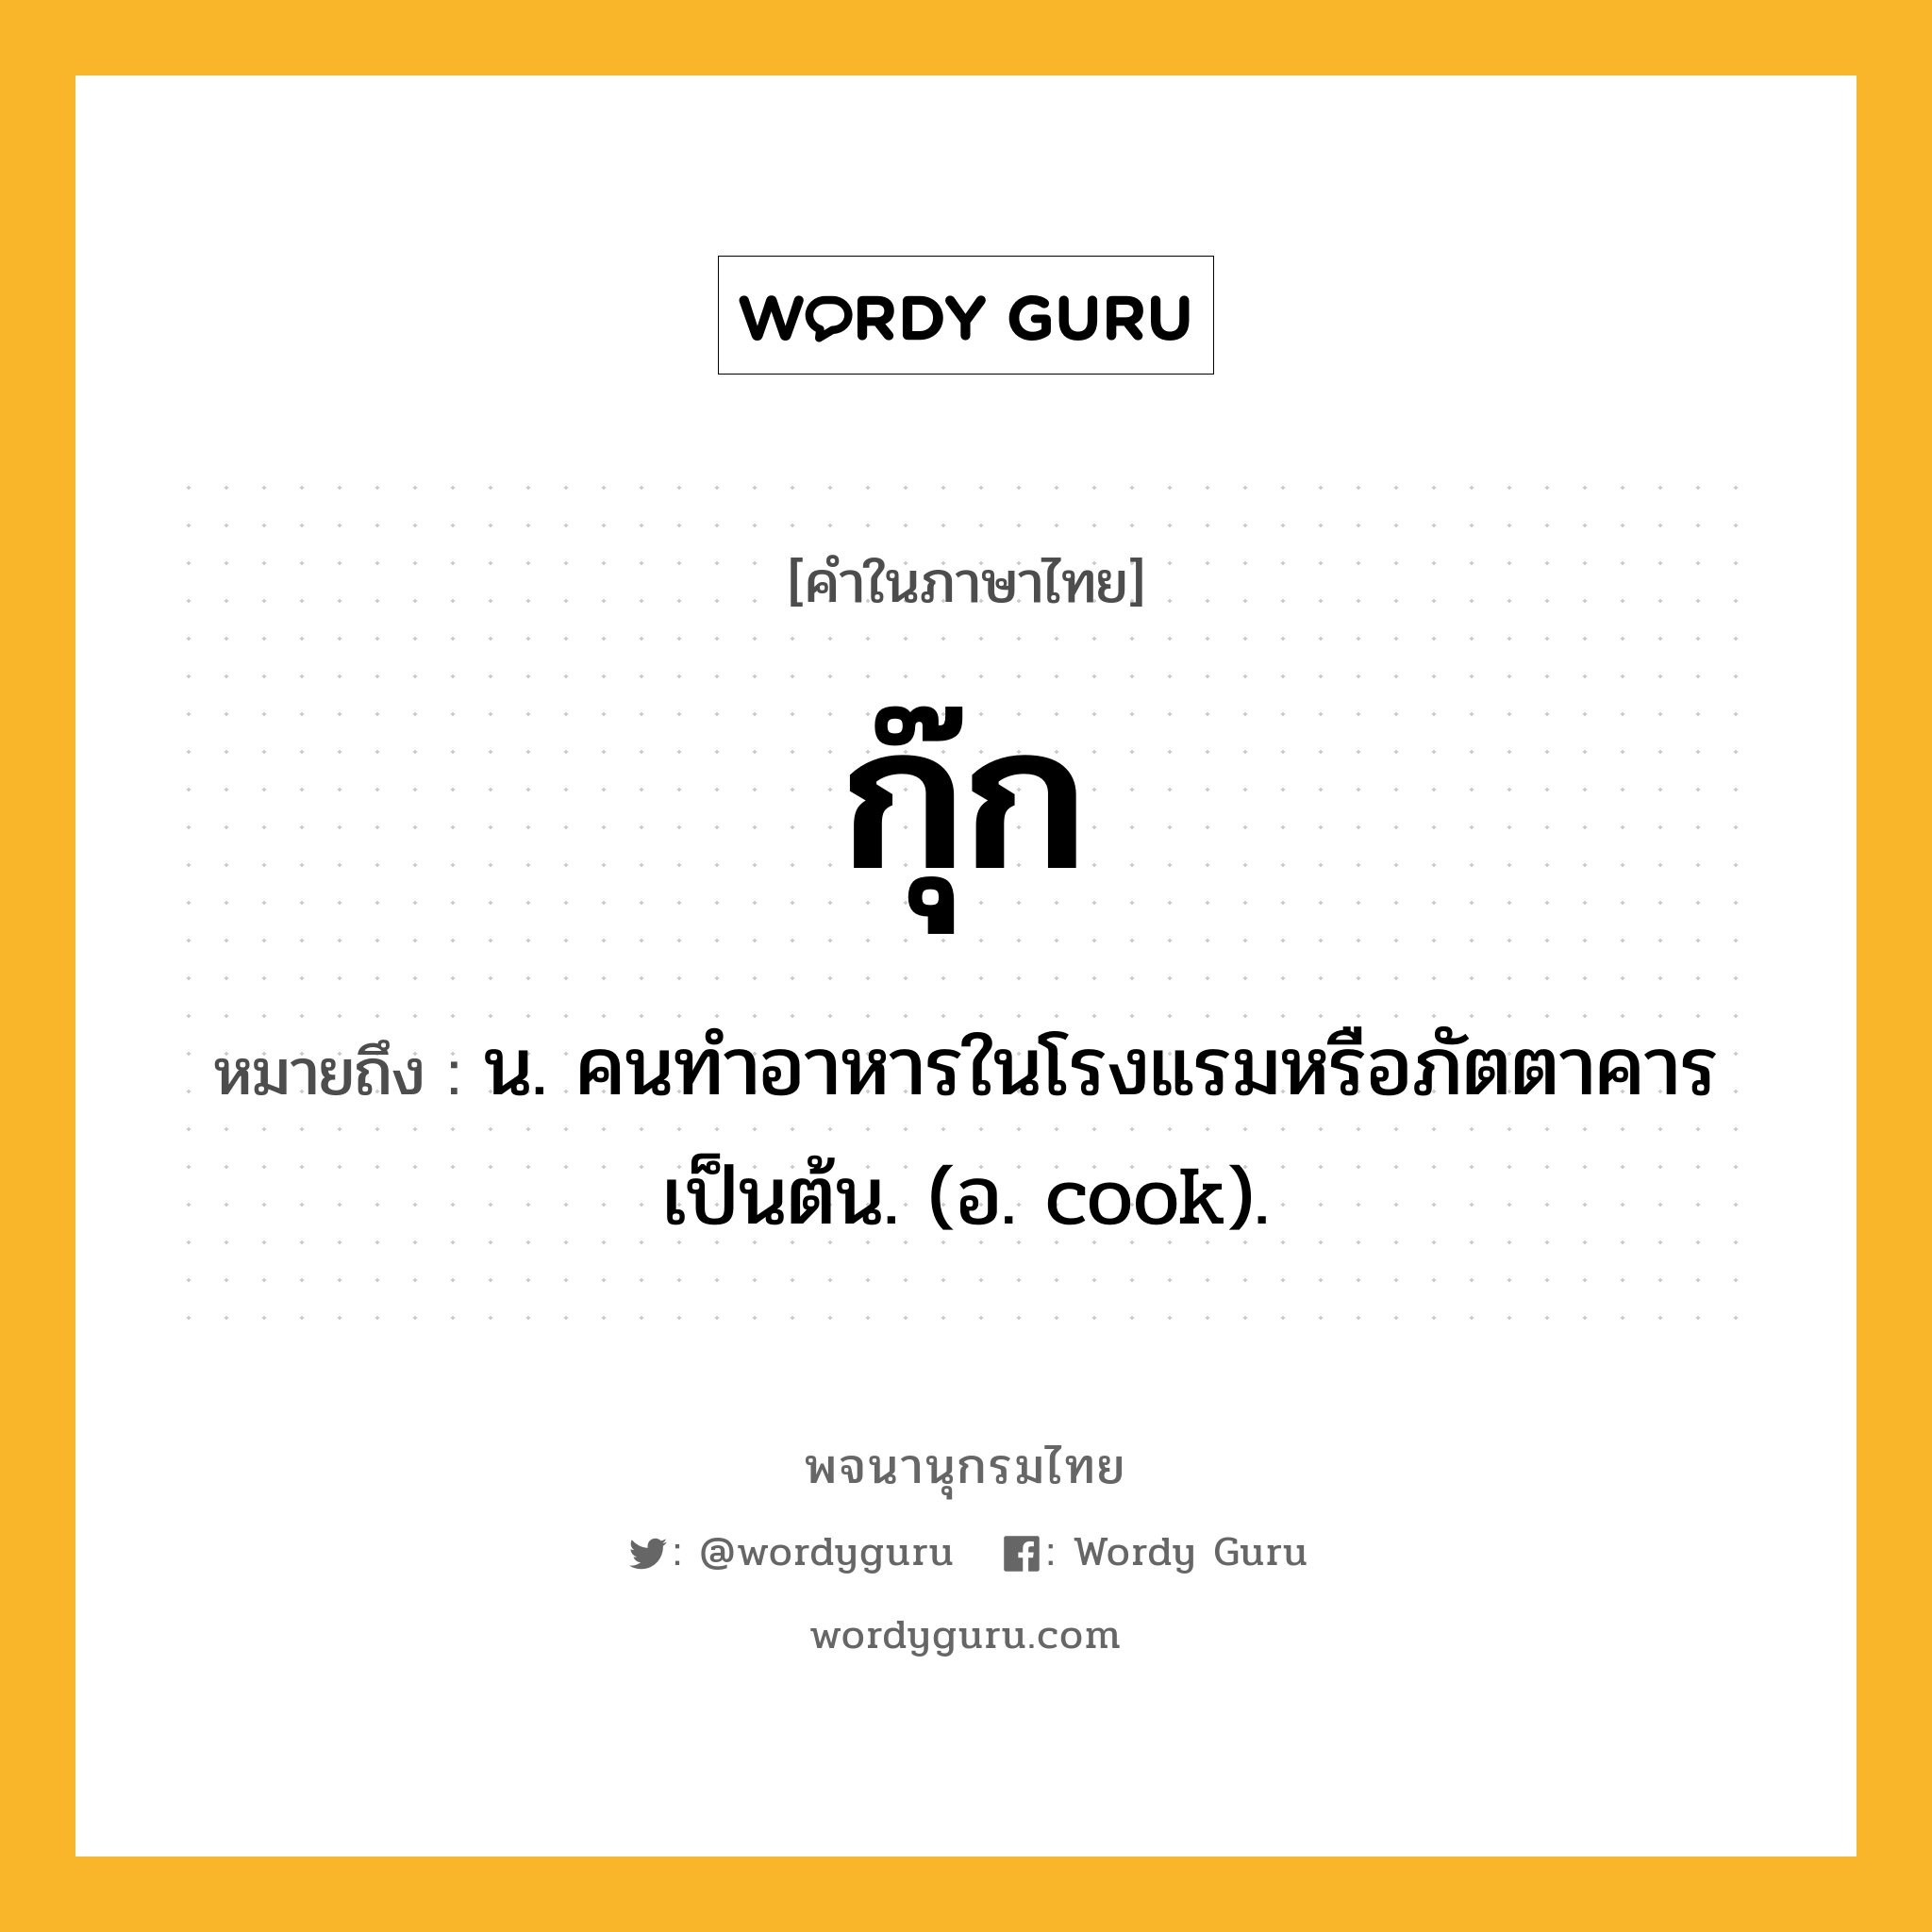 กุ๊ก หมายถึงอะไร?, คำในภาษาไทย กุ๊ก หมายถึง น. คนทำอาหารในโรงแรมหรือภัตตาคารเป็นต้น. (อ. cook).